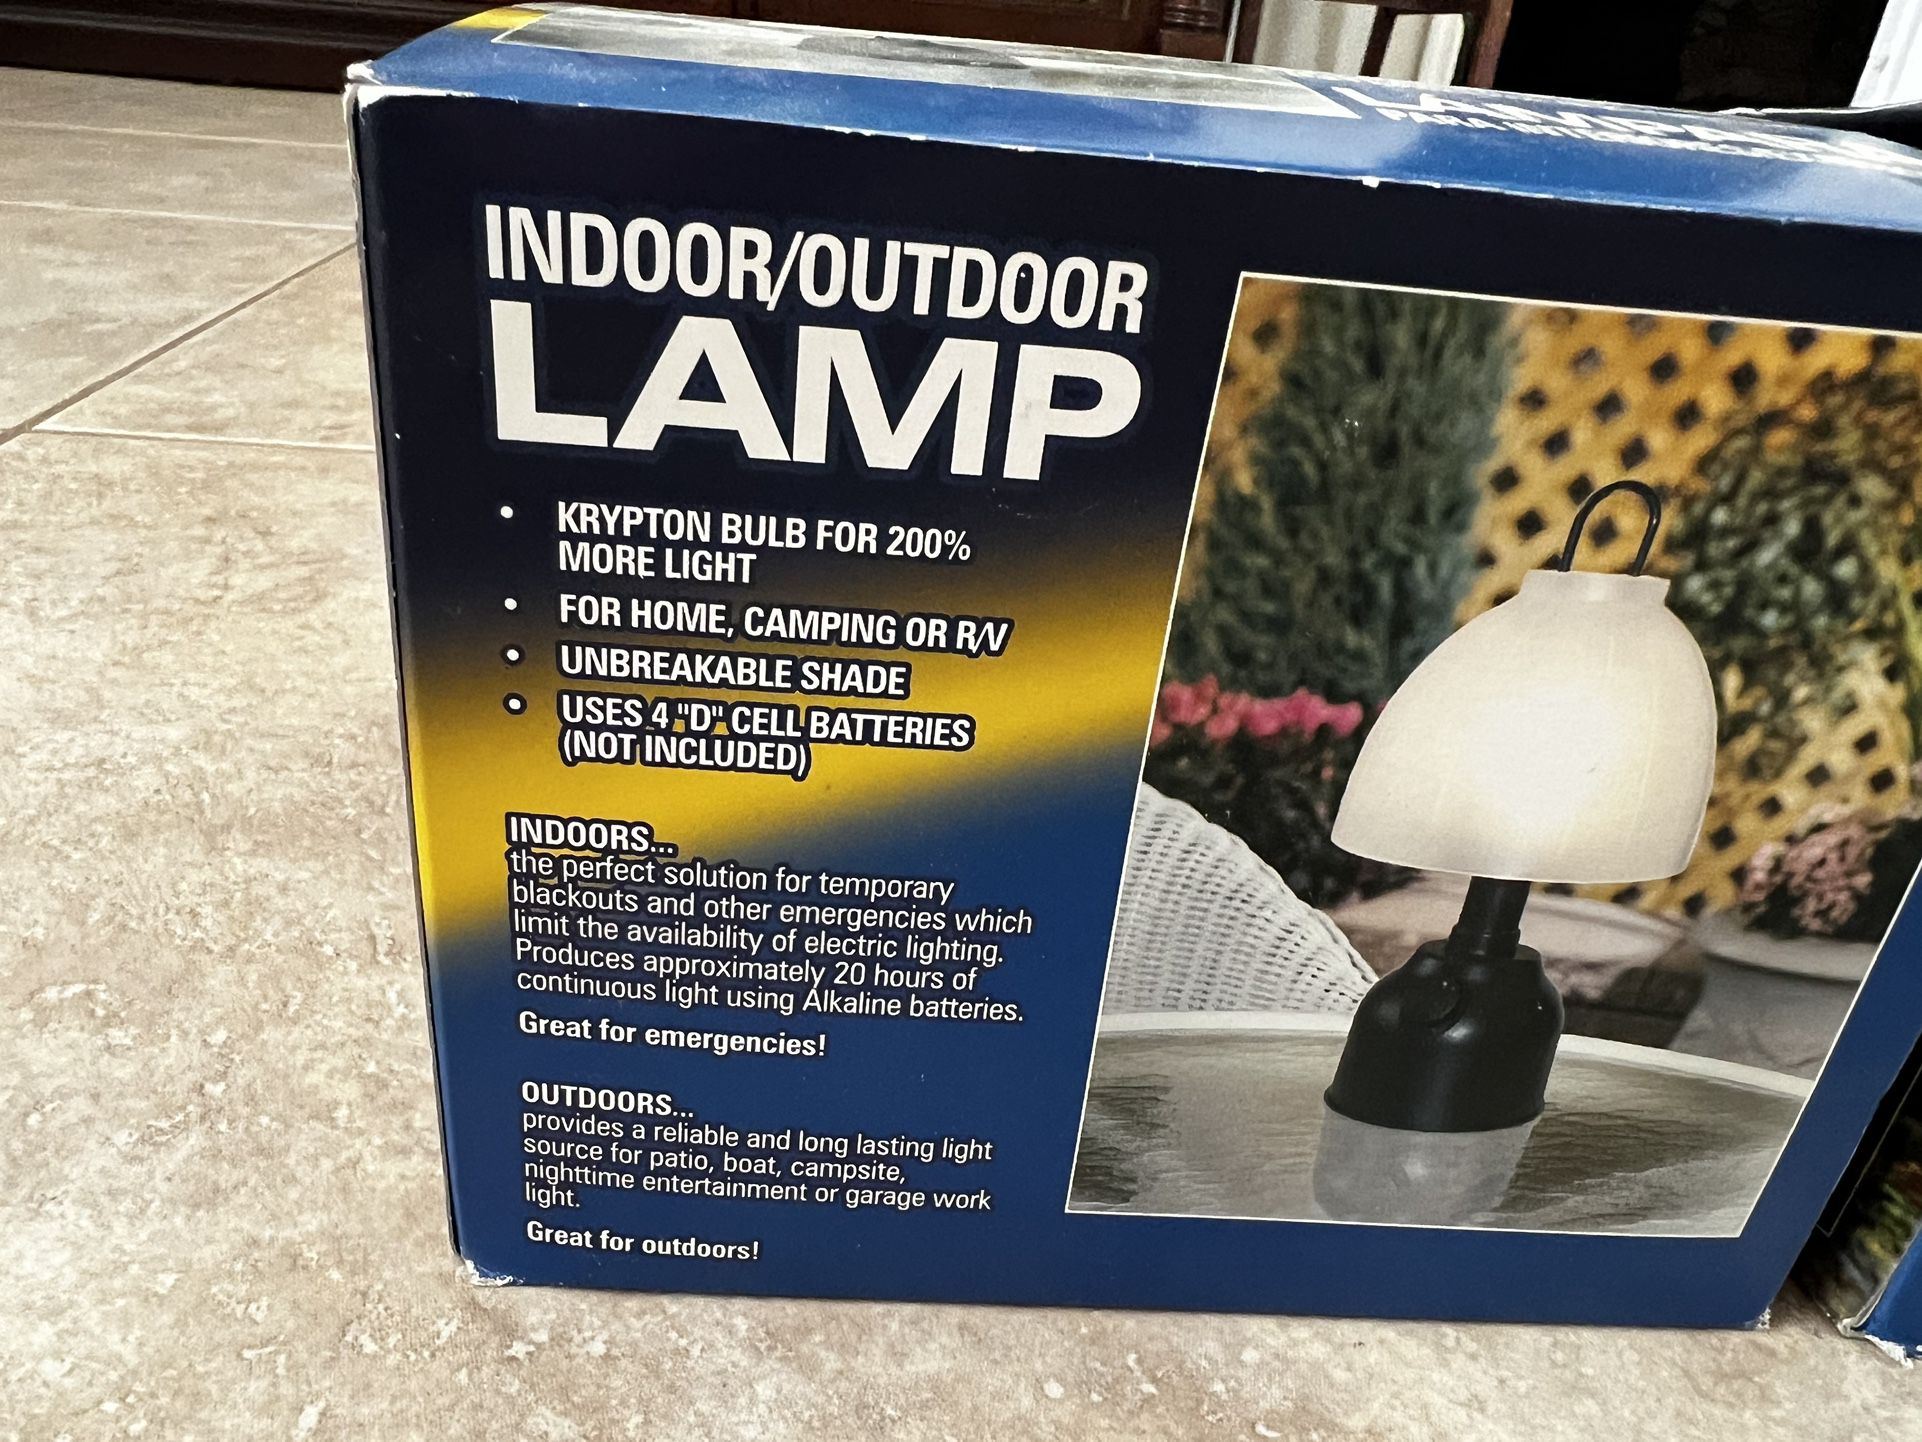 2 NIB Outdoor/Indoor Lamps